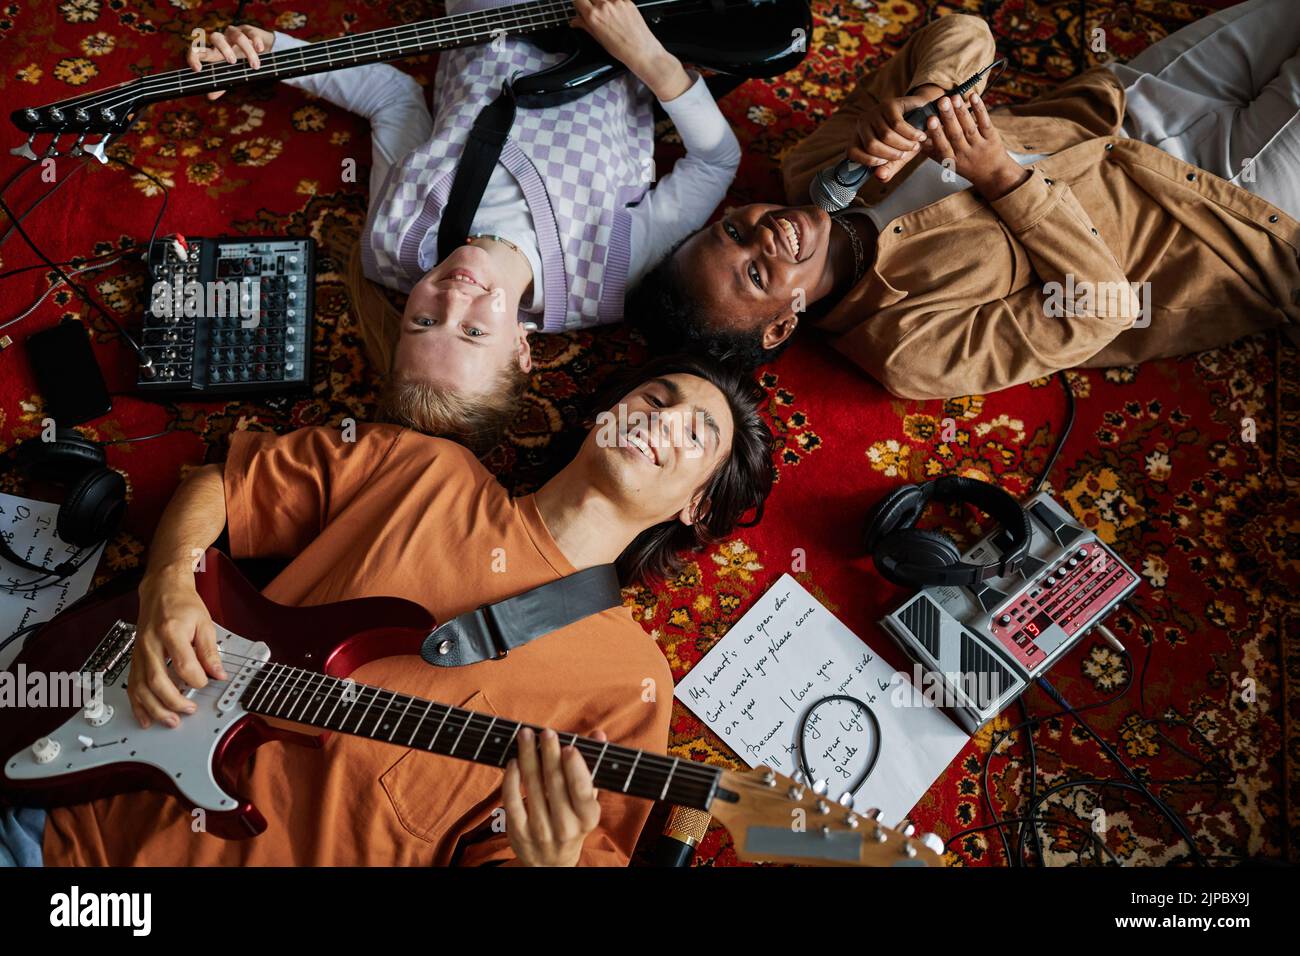 Imagen superior de una sonriente banda musical tumbada en una alfombra ornamentada en un estudio de mucis mirando a la cámara Foto de stock